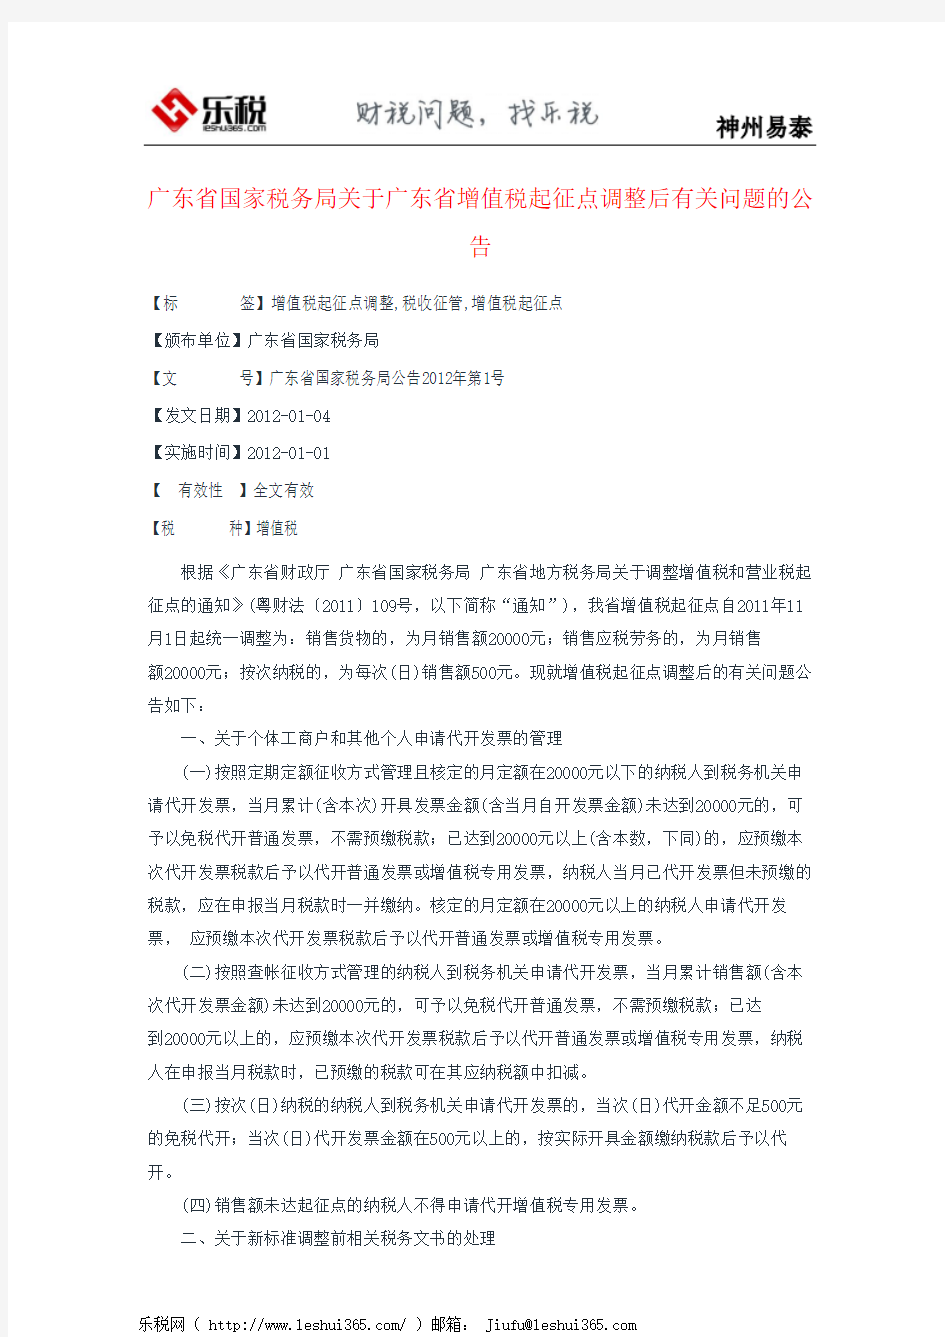 广东省国家税务局关于广东省增值税起征点调整后有关问题的公告